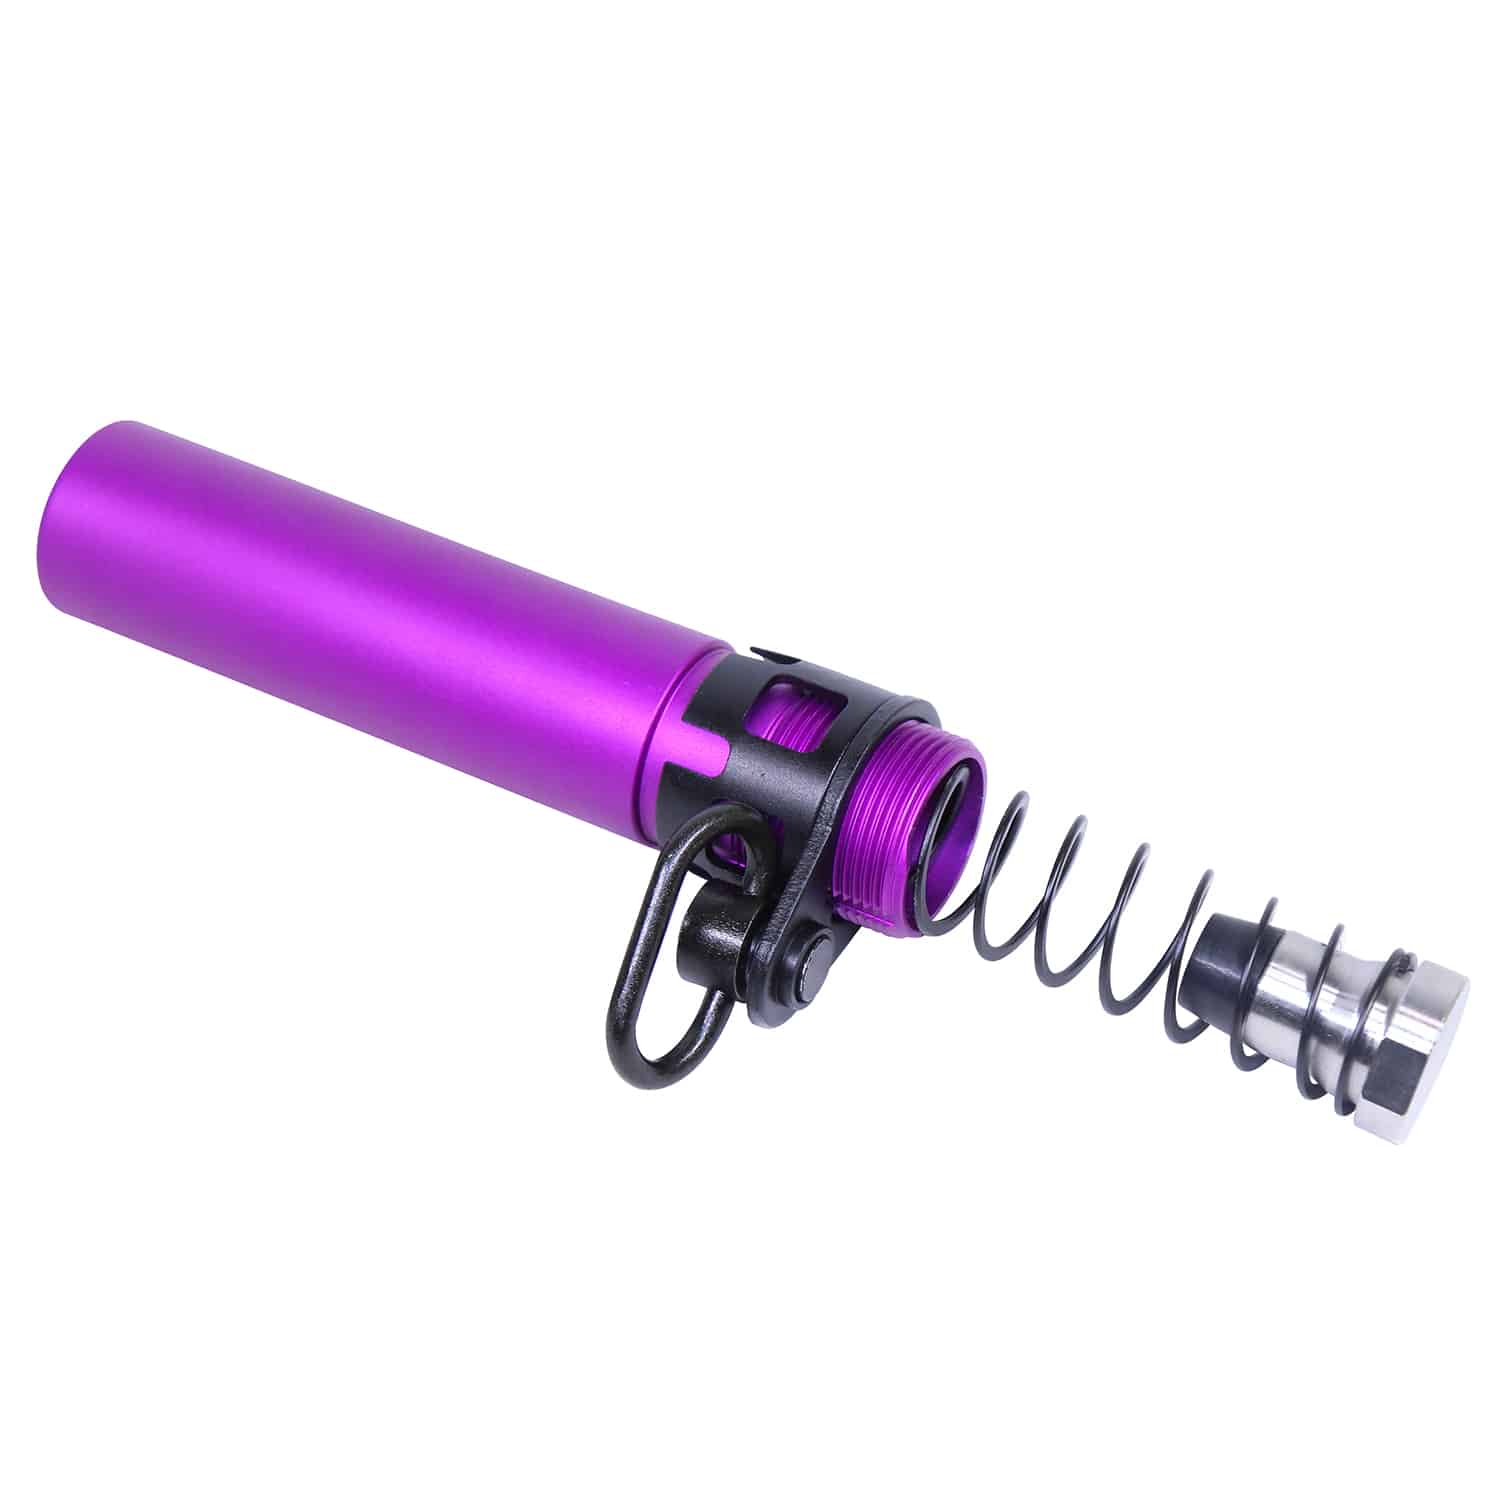 AR-15 Micro Pistol Buffer Tube Set in Anodized Purple